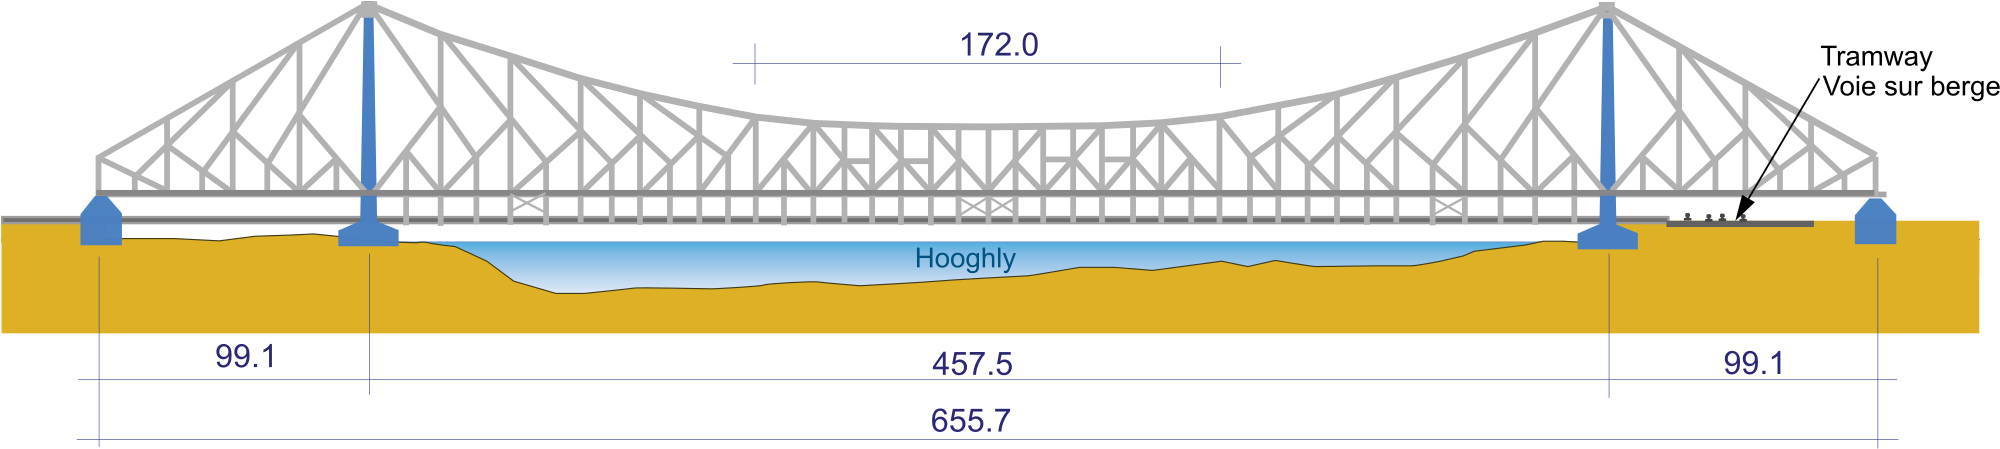 Thumb Image - Howrah Bridge Vector Png - HD Wallpaper 